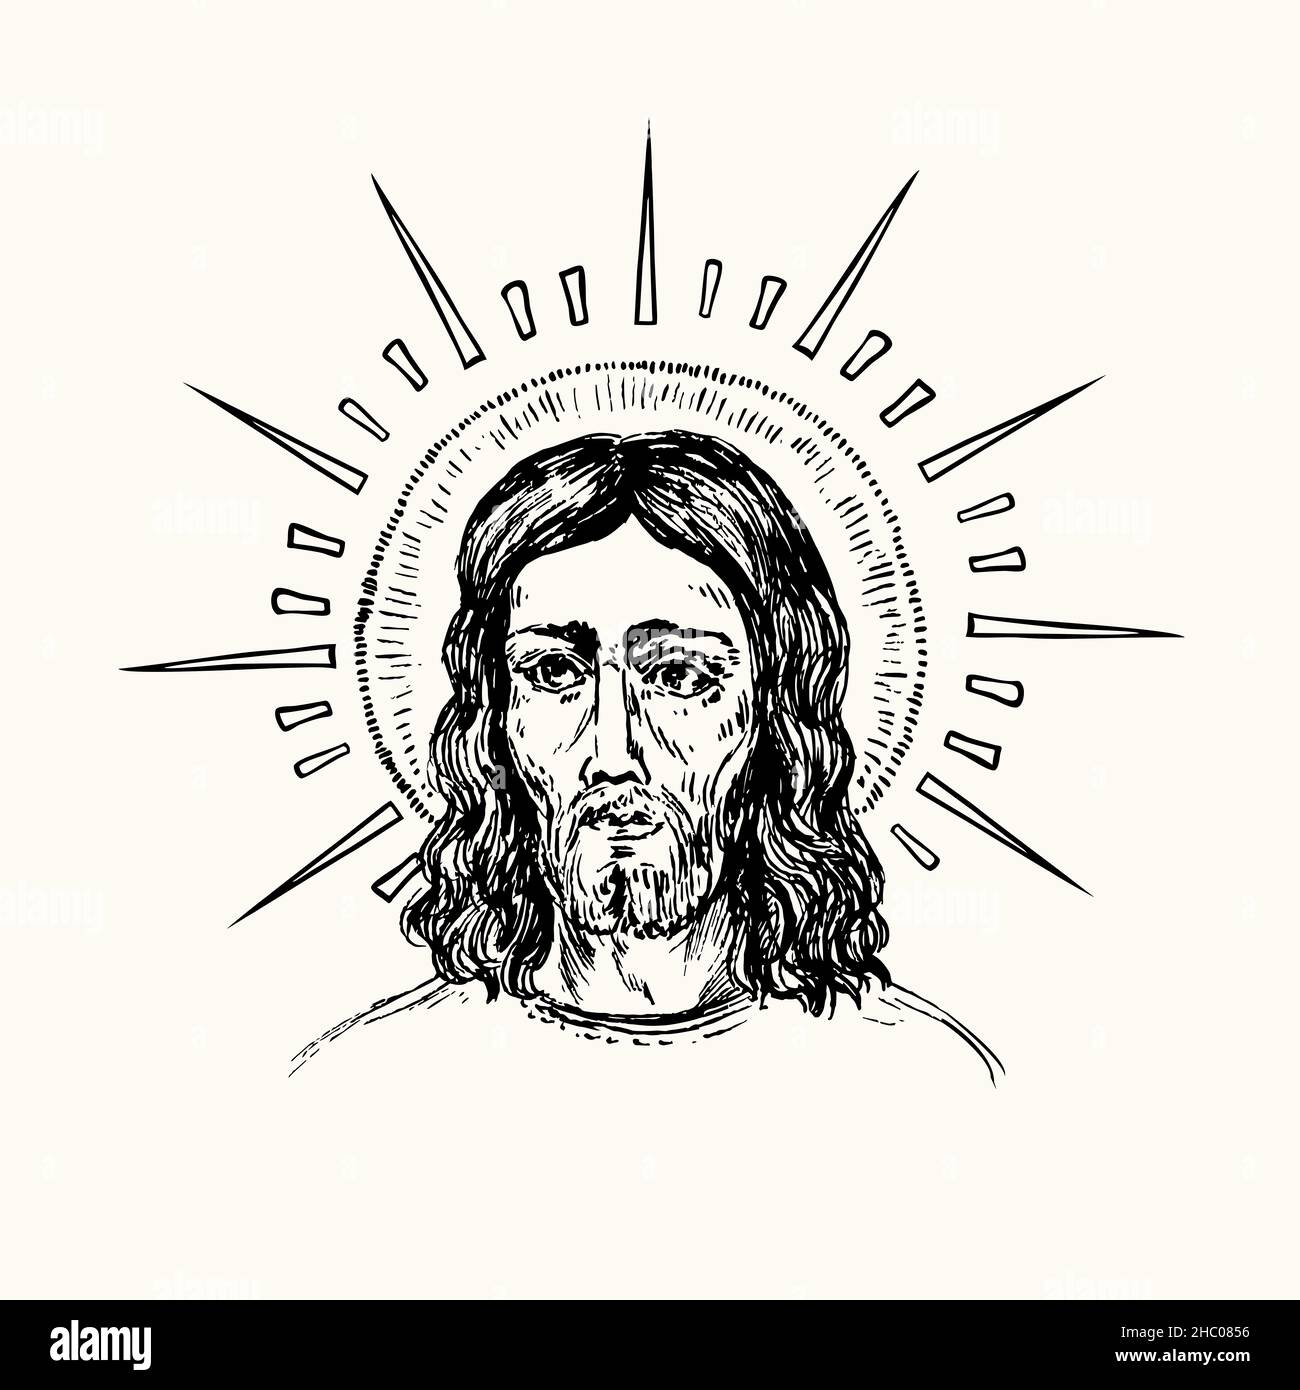 Icono De Jesucristo Con Nimb Dibujo De Fideos En Blanco Y Negro Con